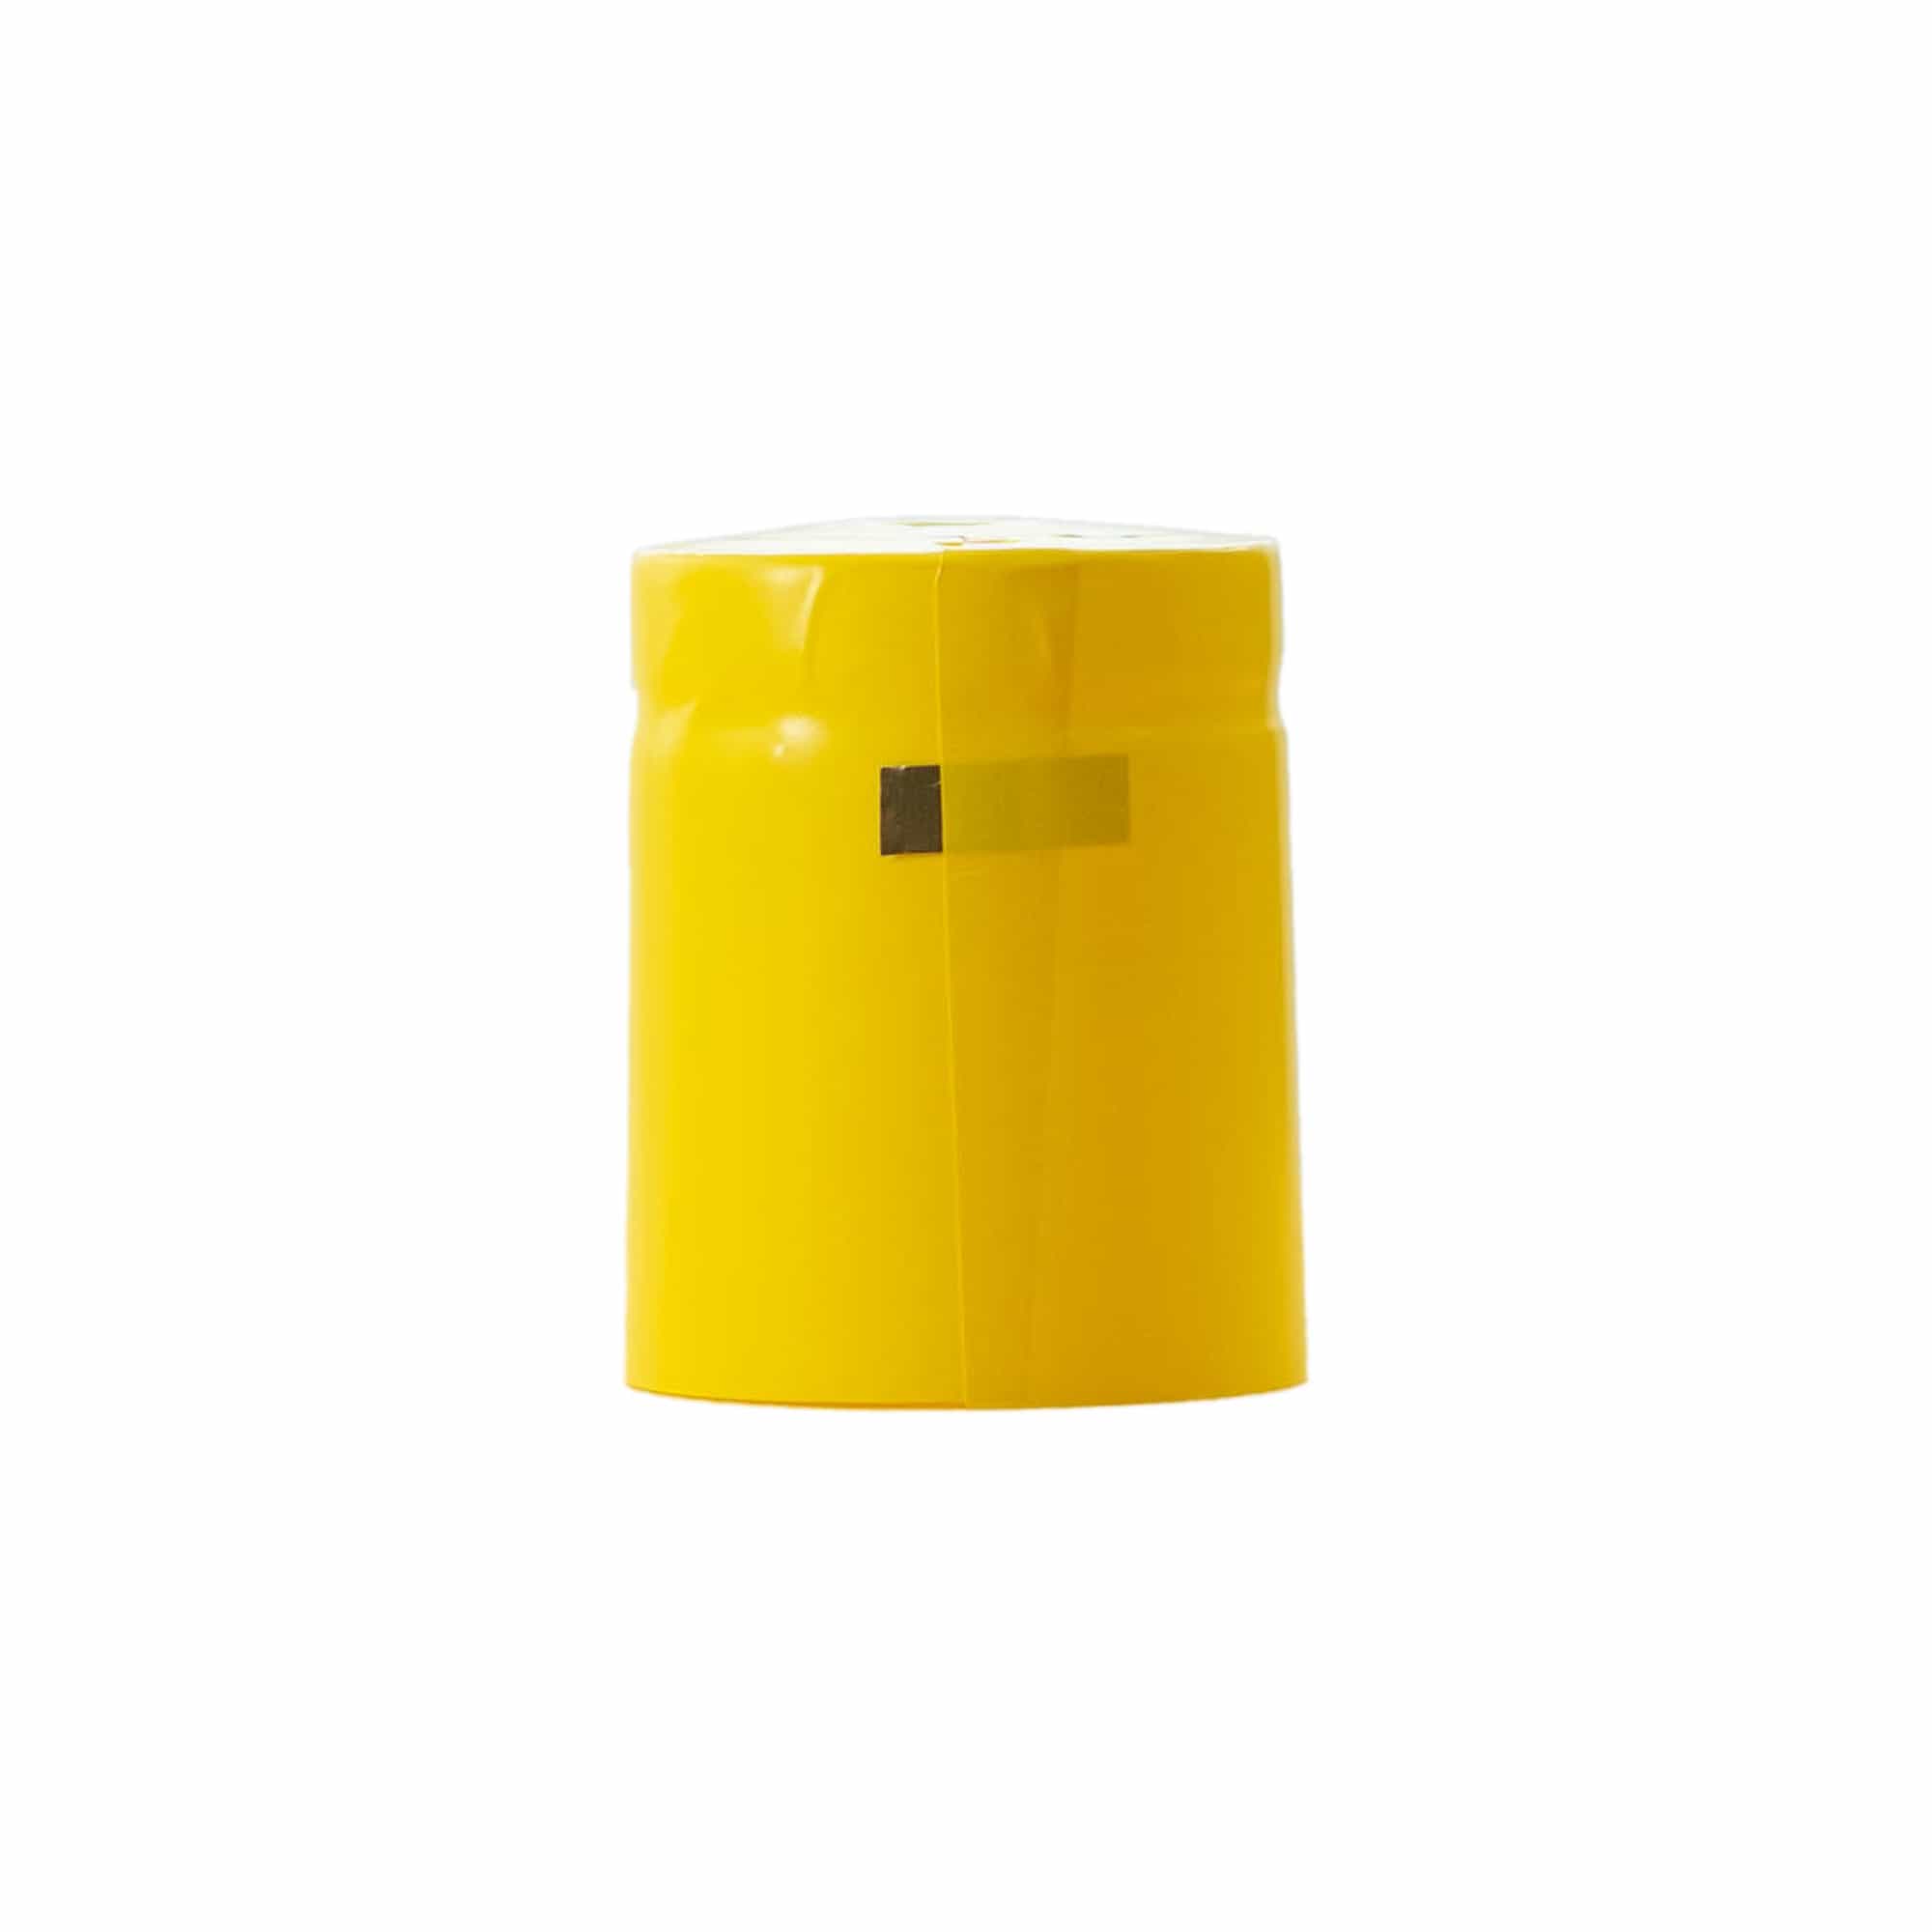 Schrumpfkapsel 32x41, PVC-Kunststoff, gelb